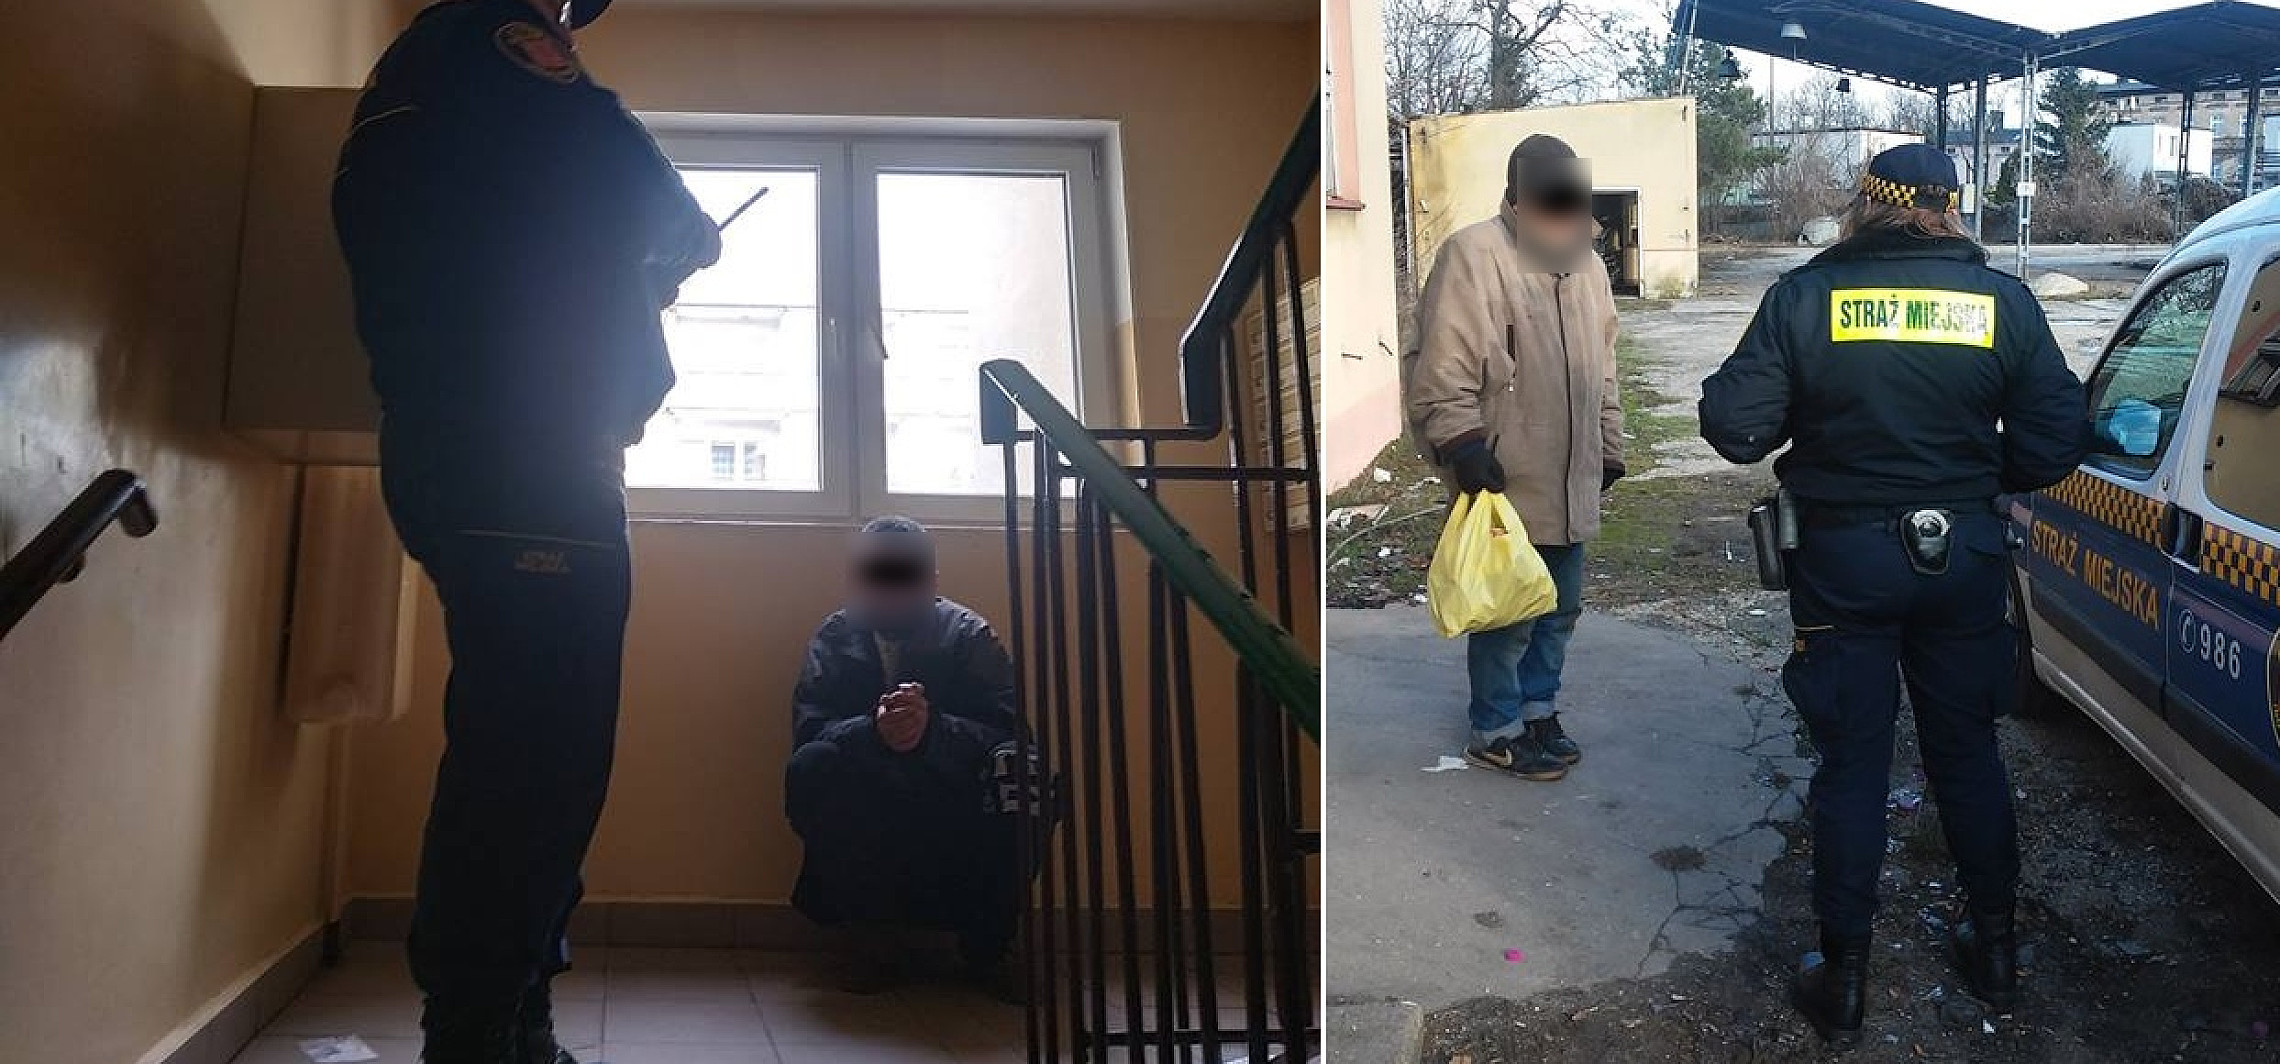 Inowrocław - Blisko 600 interwencji wobec bezdomnych